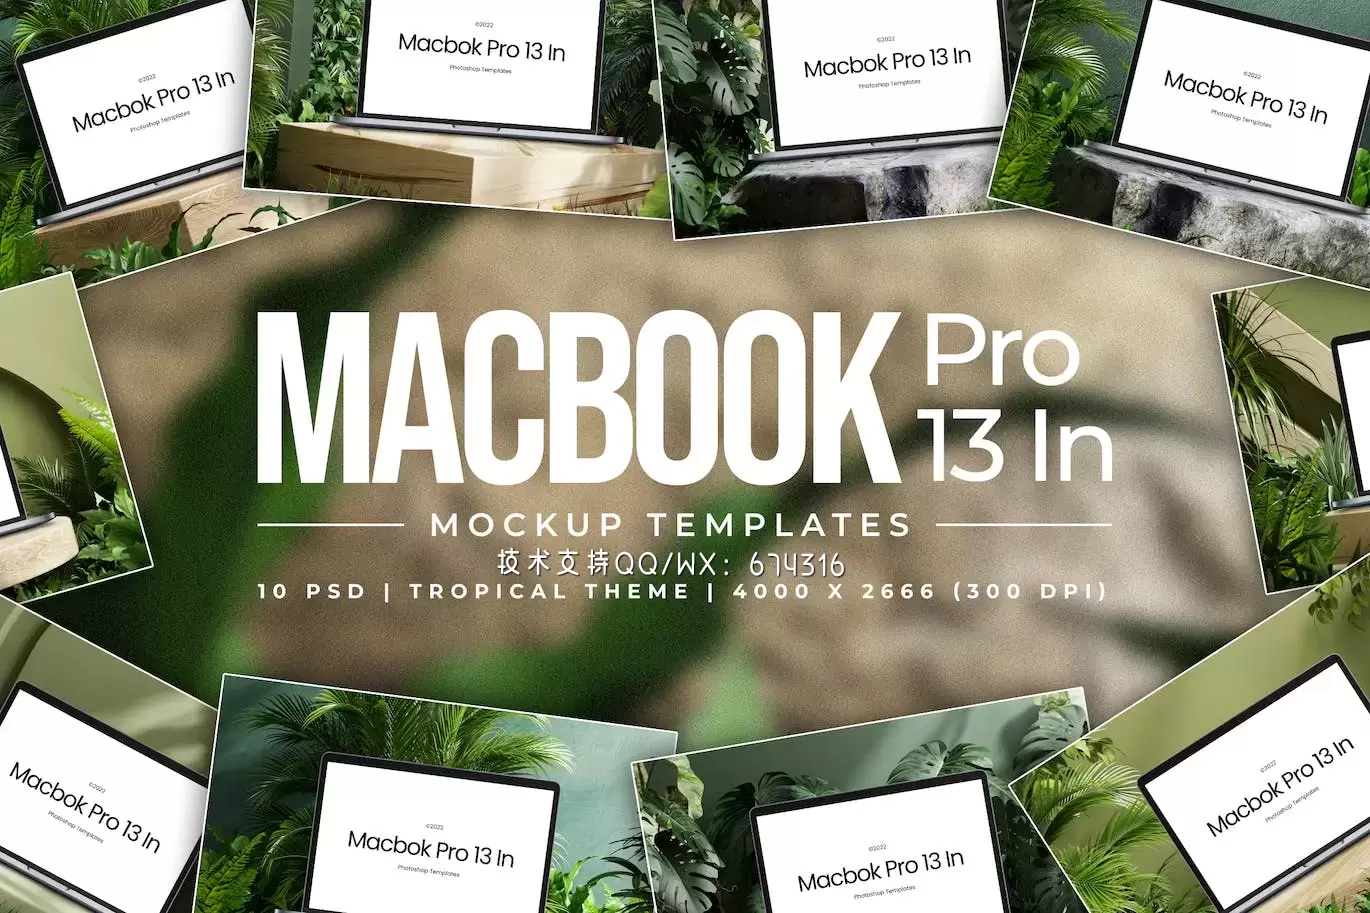 热带 Macbook Pro 13 英寸样机 (PSD)下载